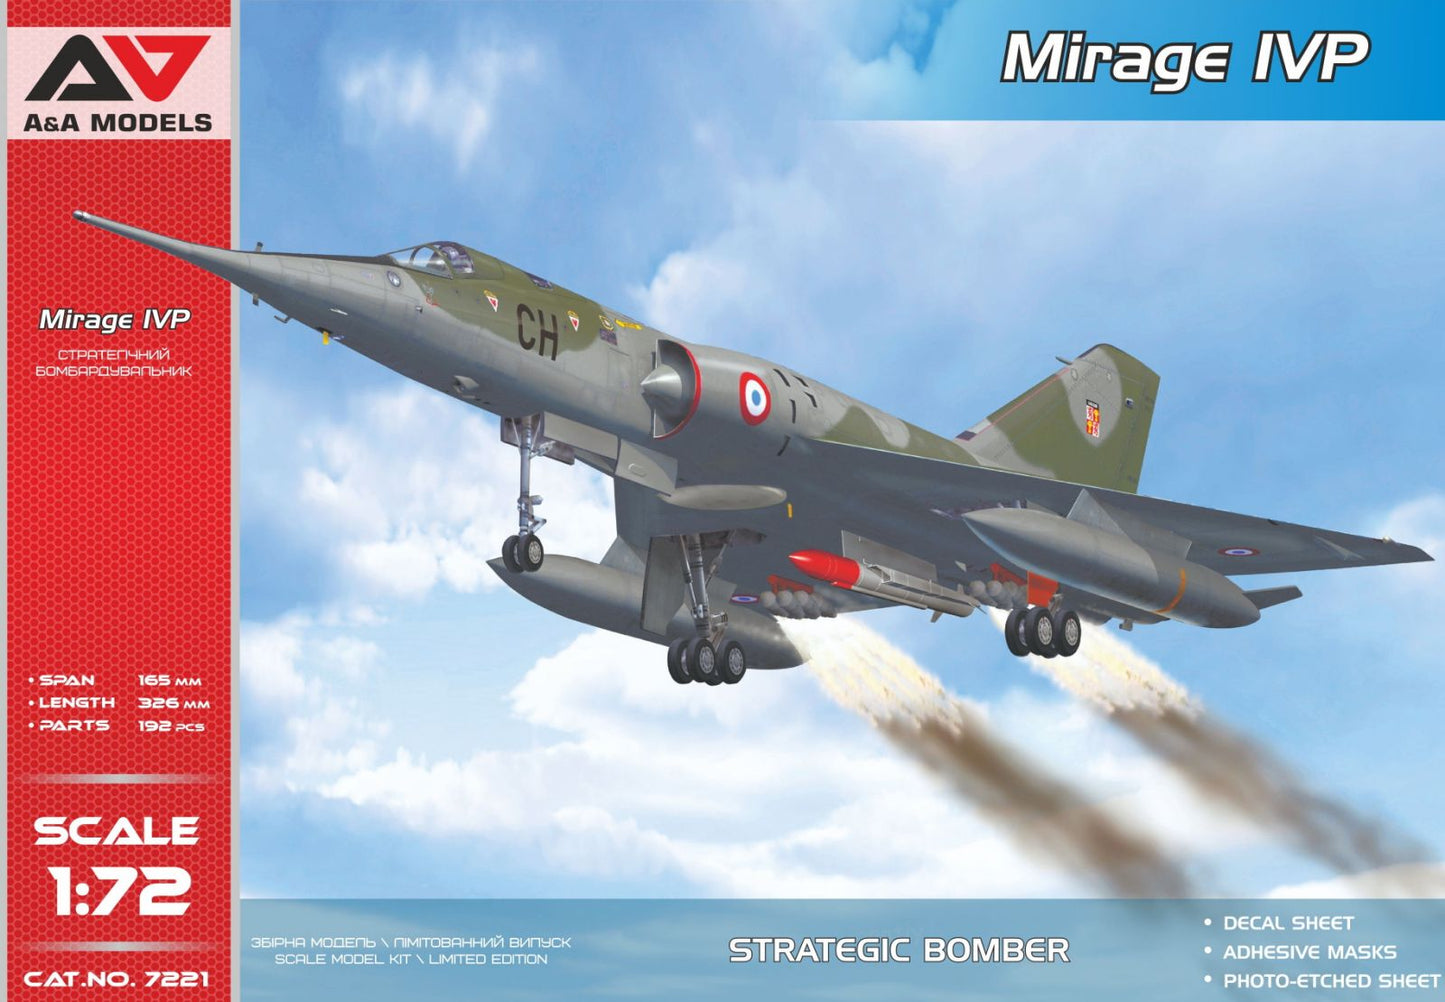 Mirage IVP - A&A MODELS 1/72